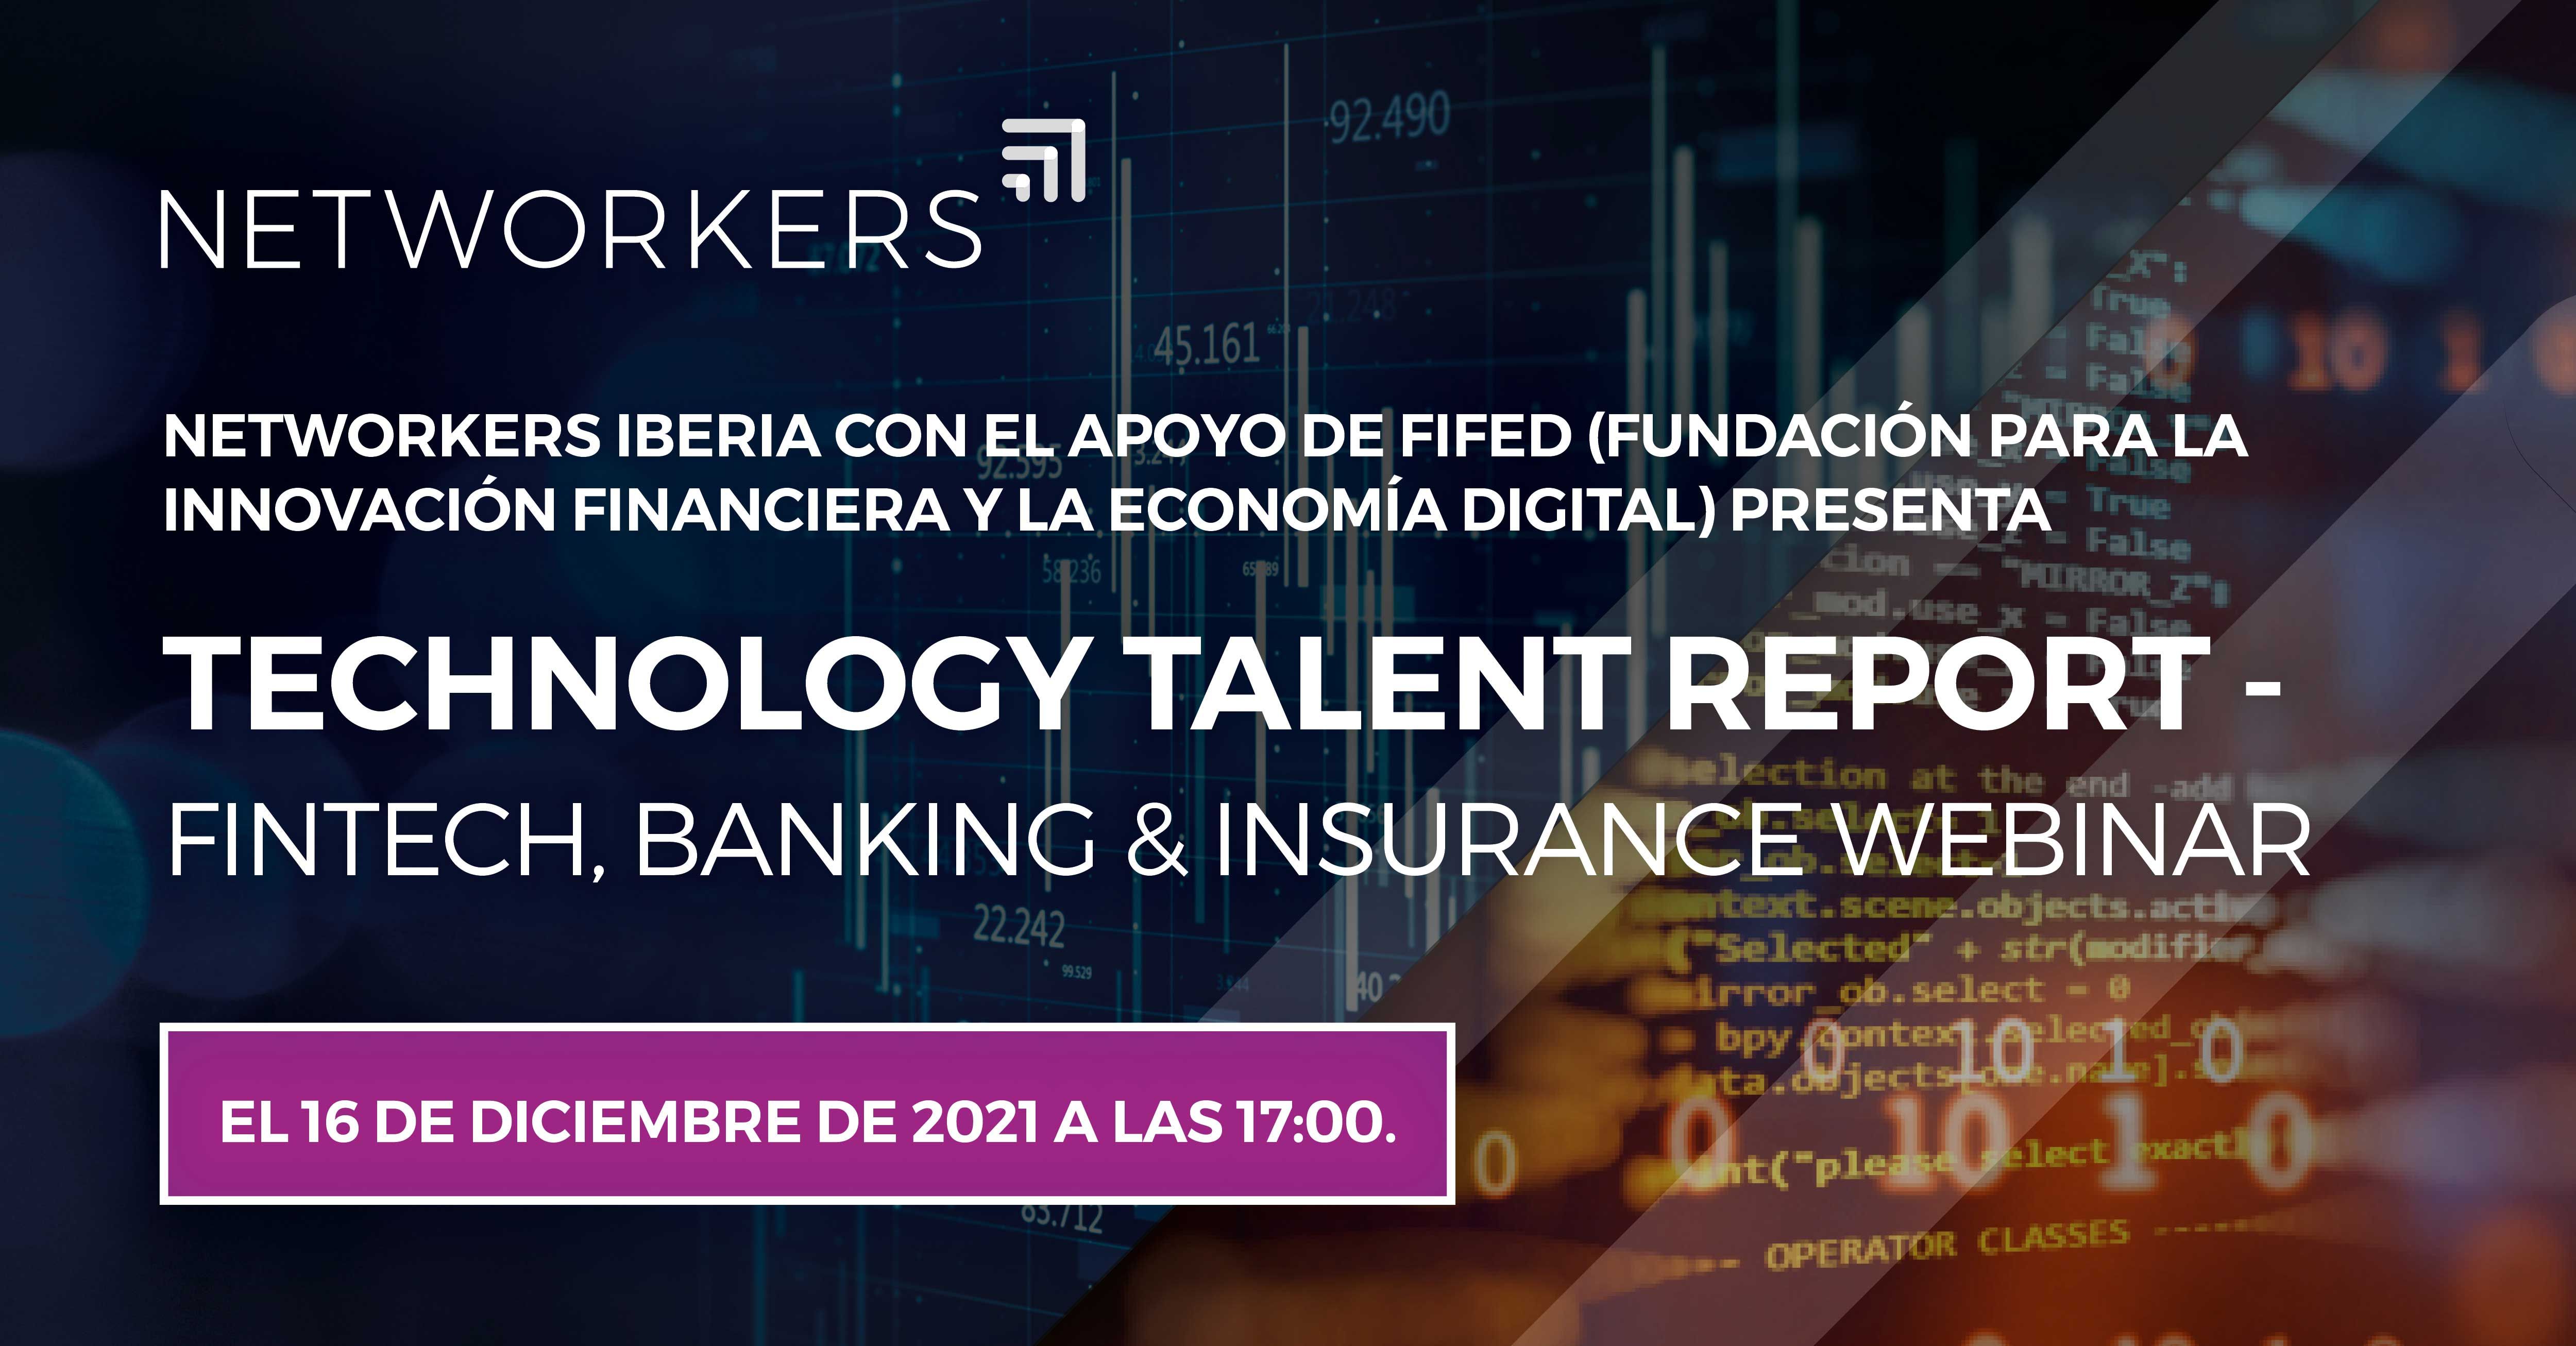 Technology Talent Report - Fintech, Banking & Insurance Webinar